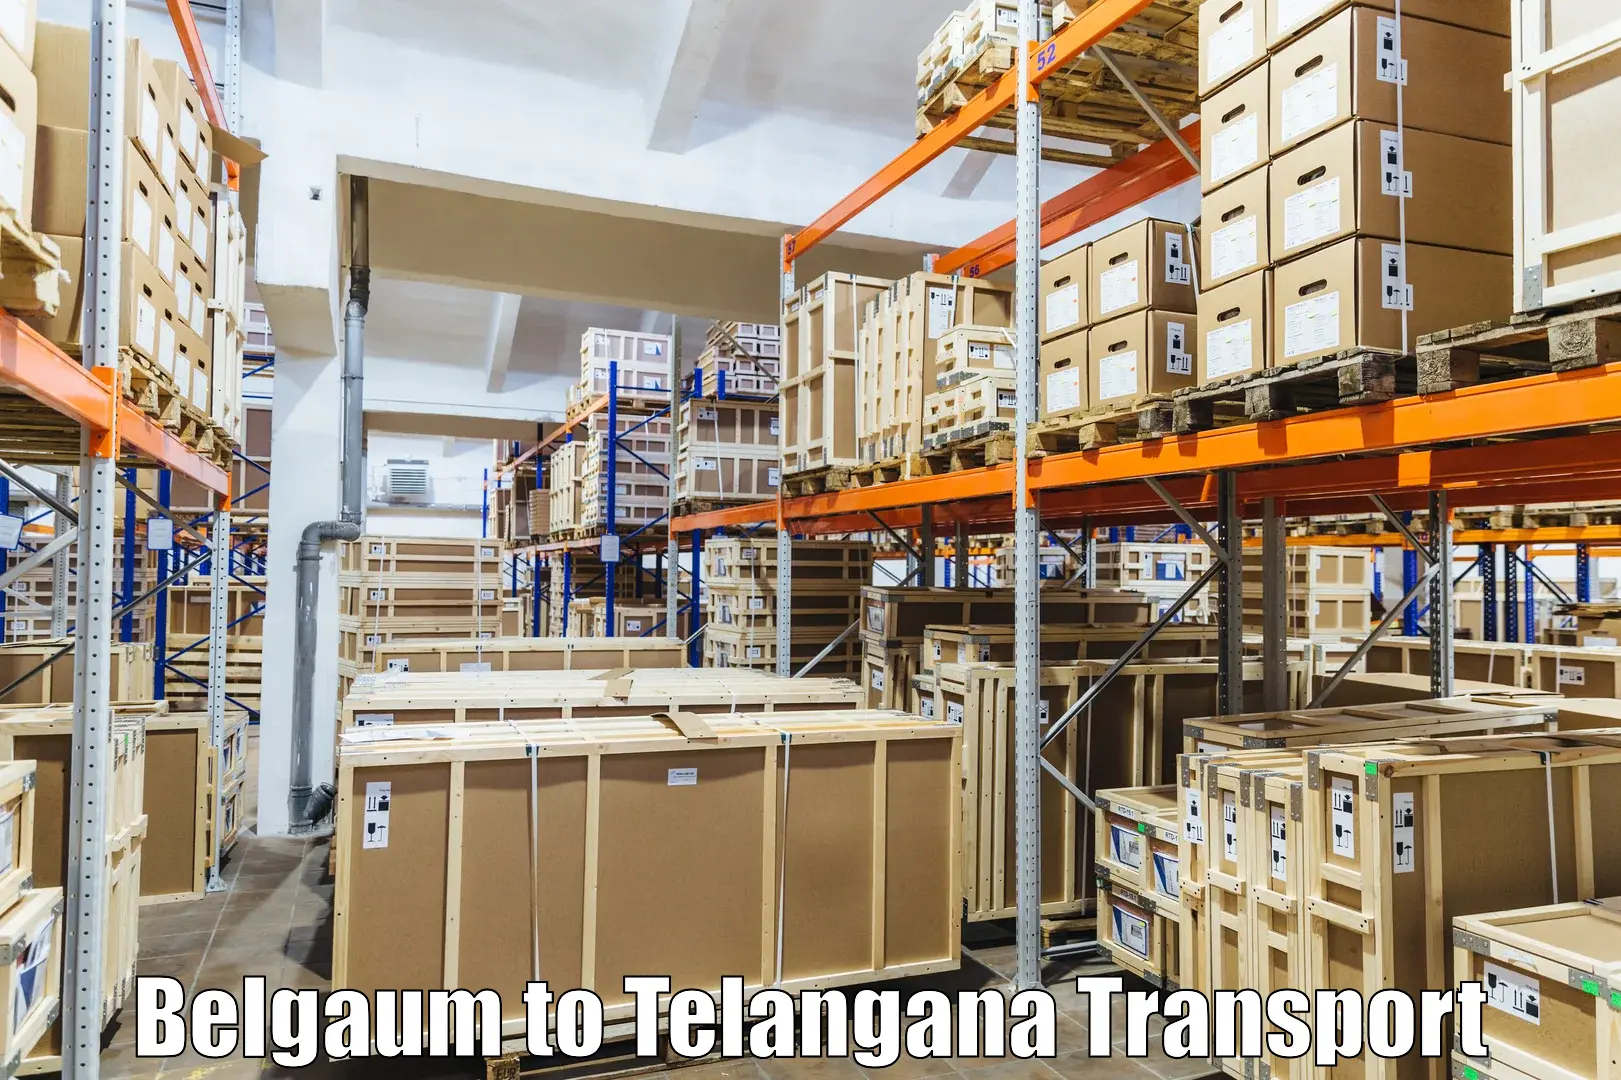 Transport in sharing Belgaum to Warangal